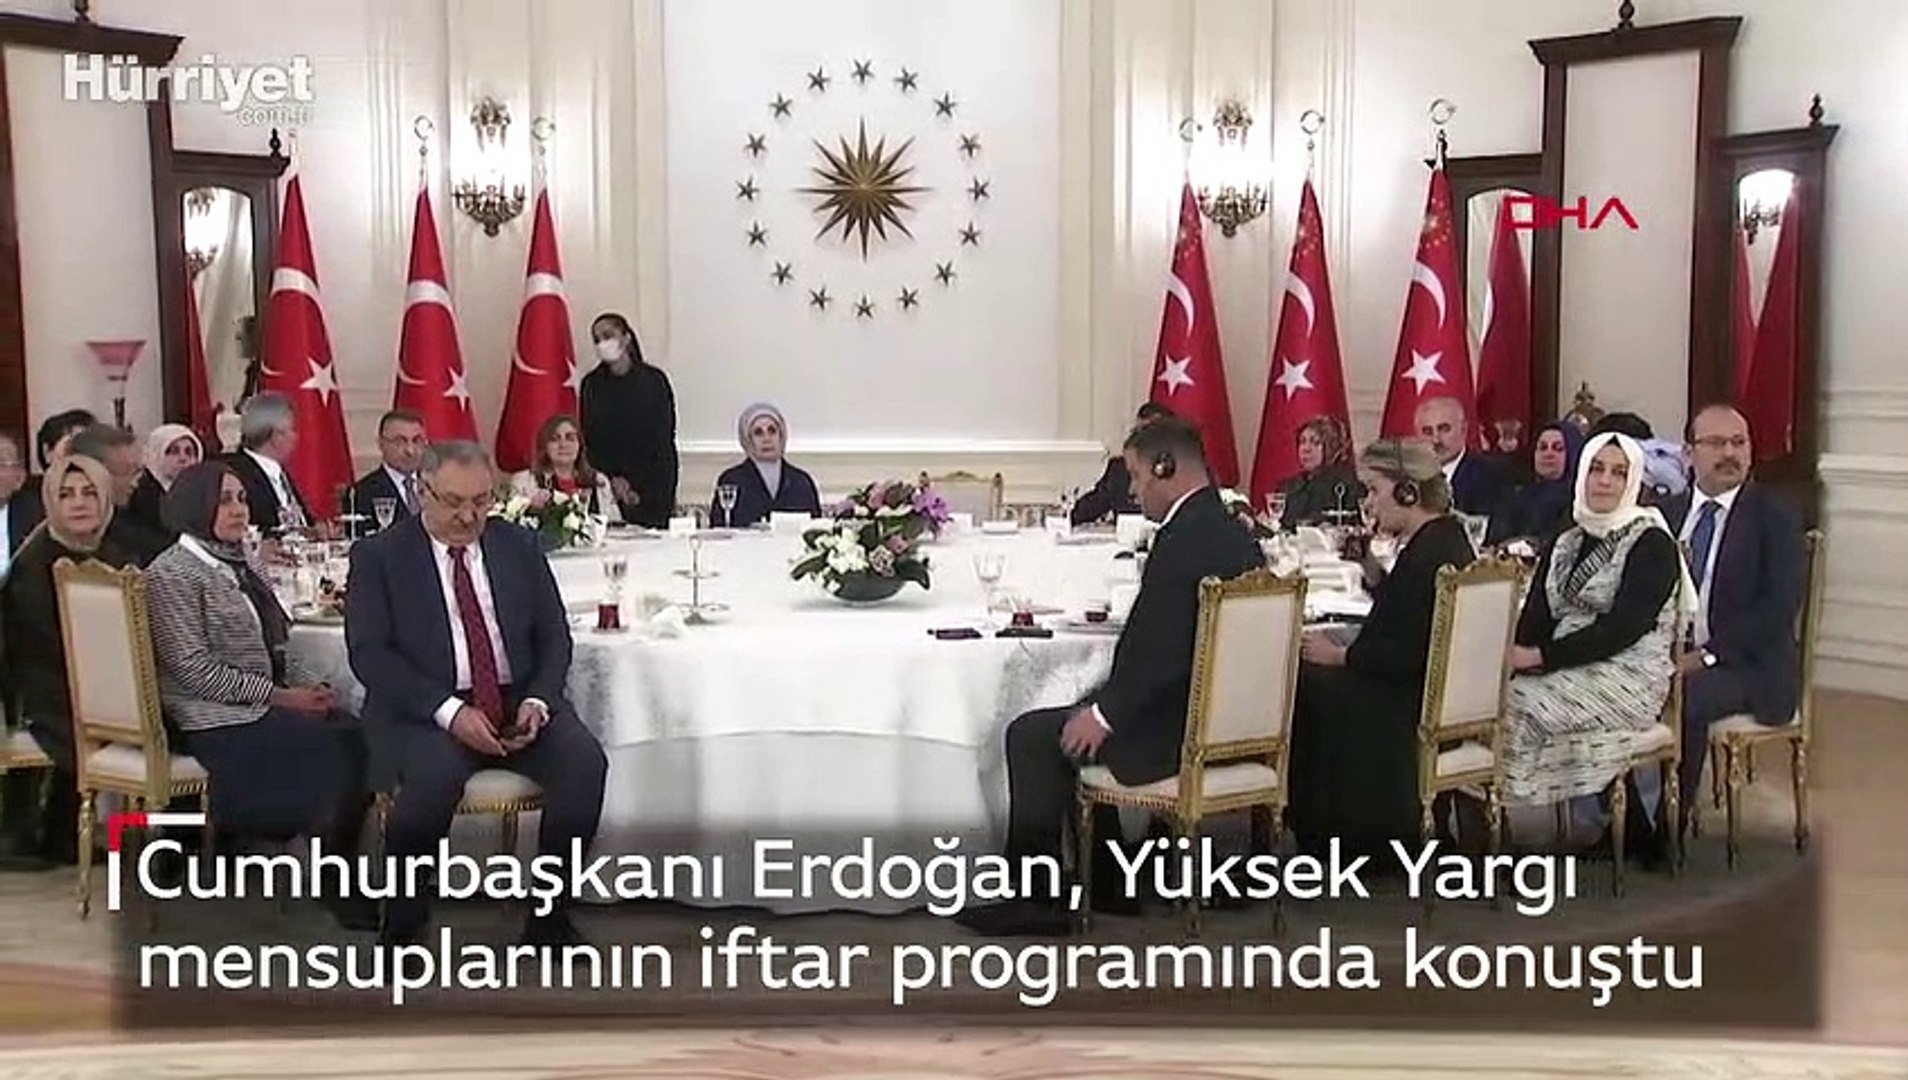 Cumhurbaşkanı Erdoğan, Yüksek Yargı mensuplarıyla bir araya geldiği iftar  programında konuştu - Dailymotion Video